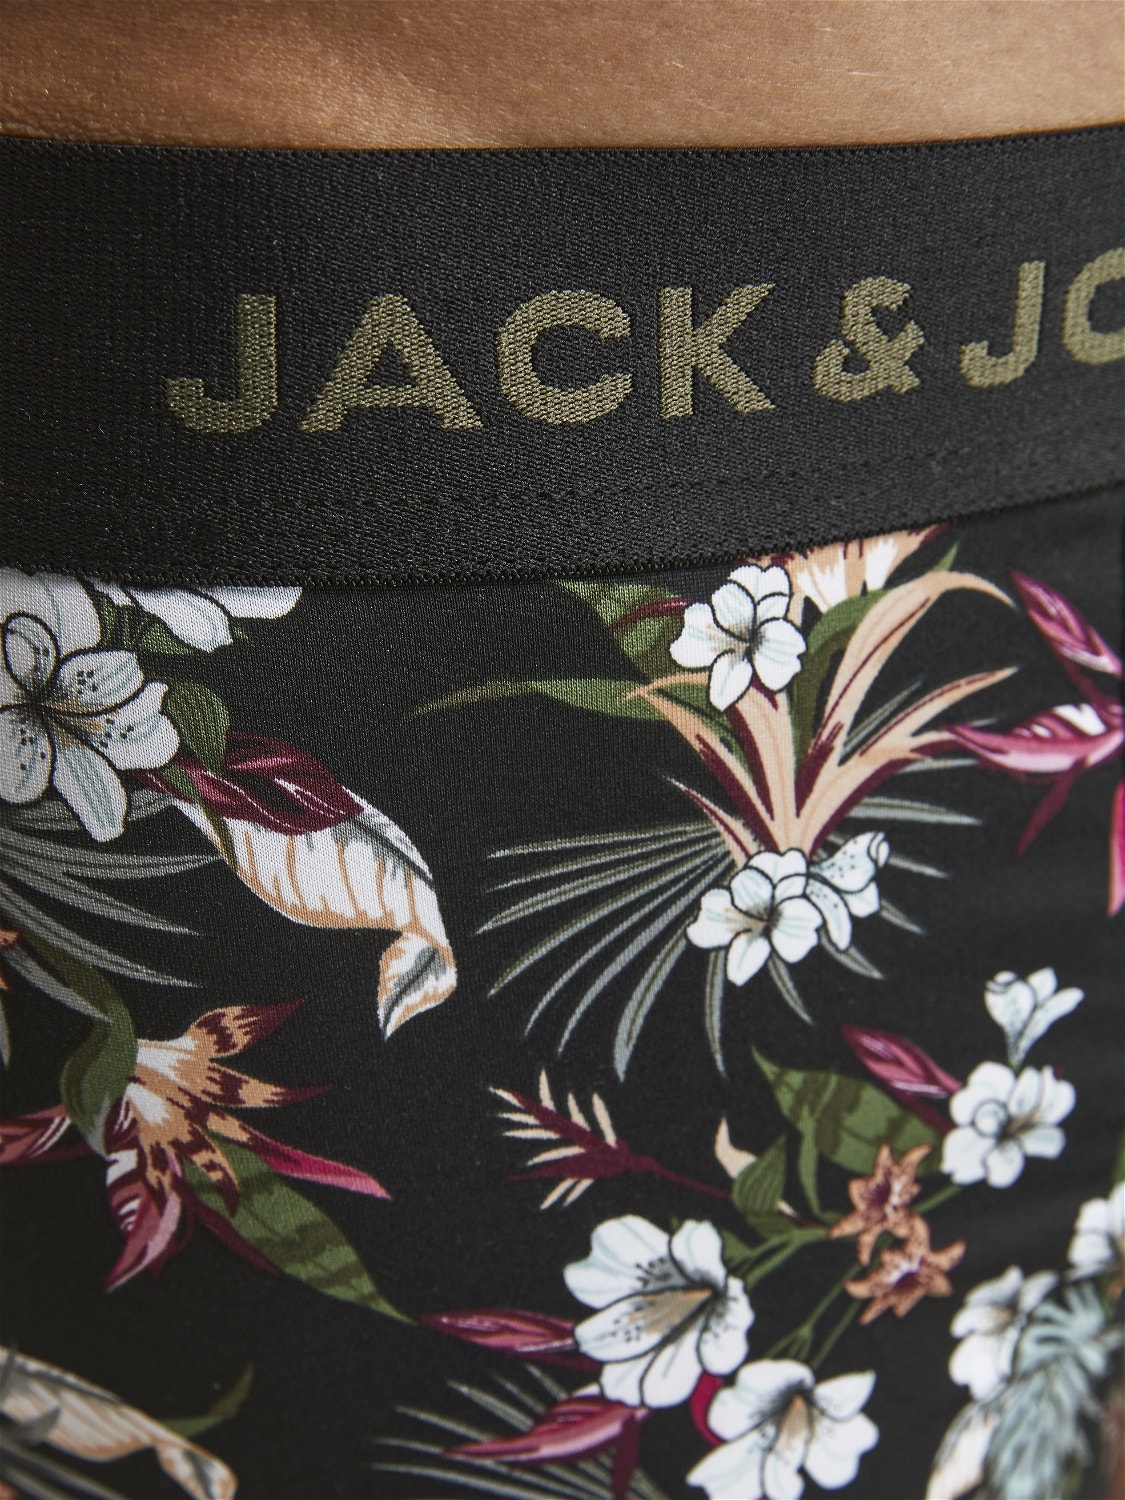 Jack & Jones 3-συσκευασία Κοντό παντελόνι -Black - 12194284